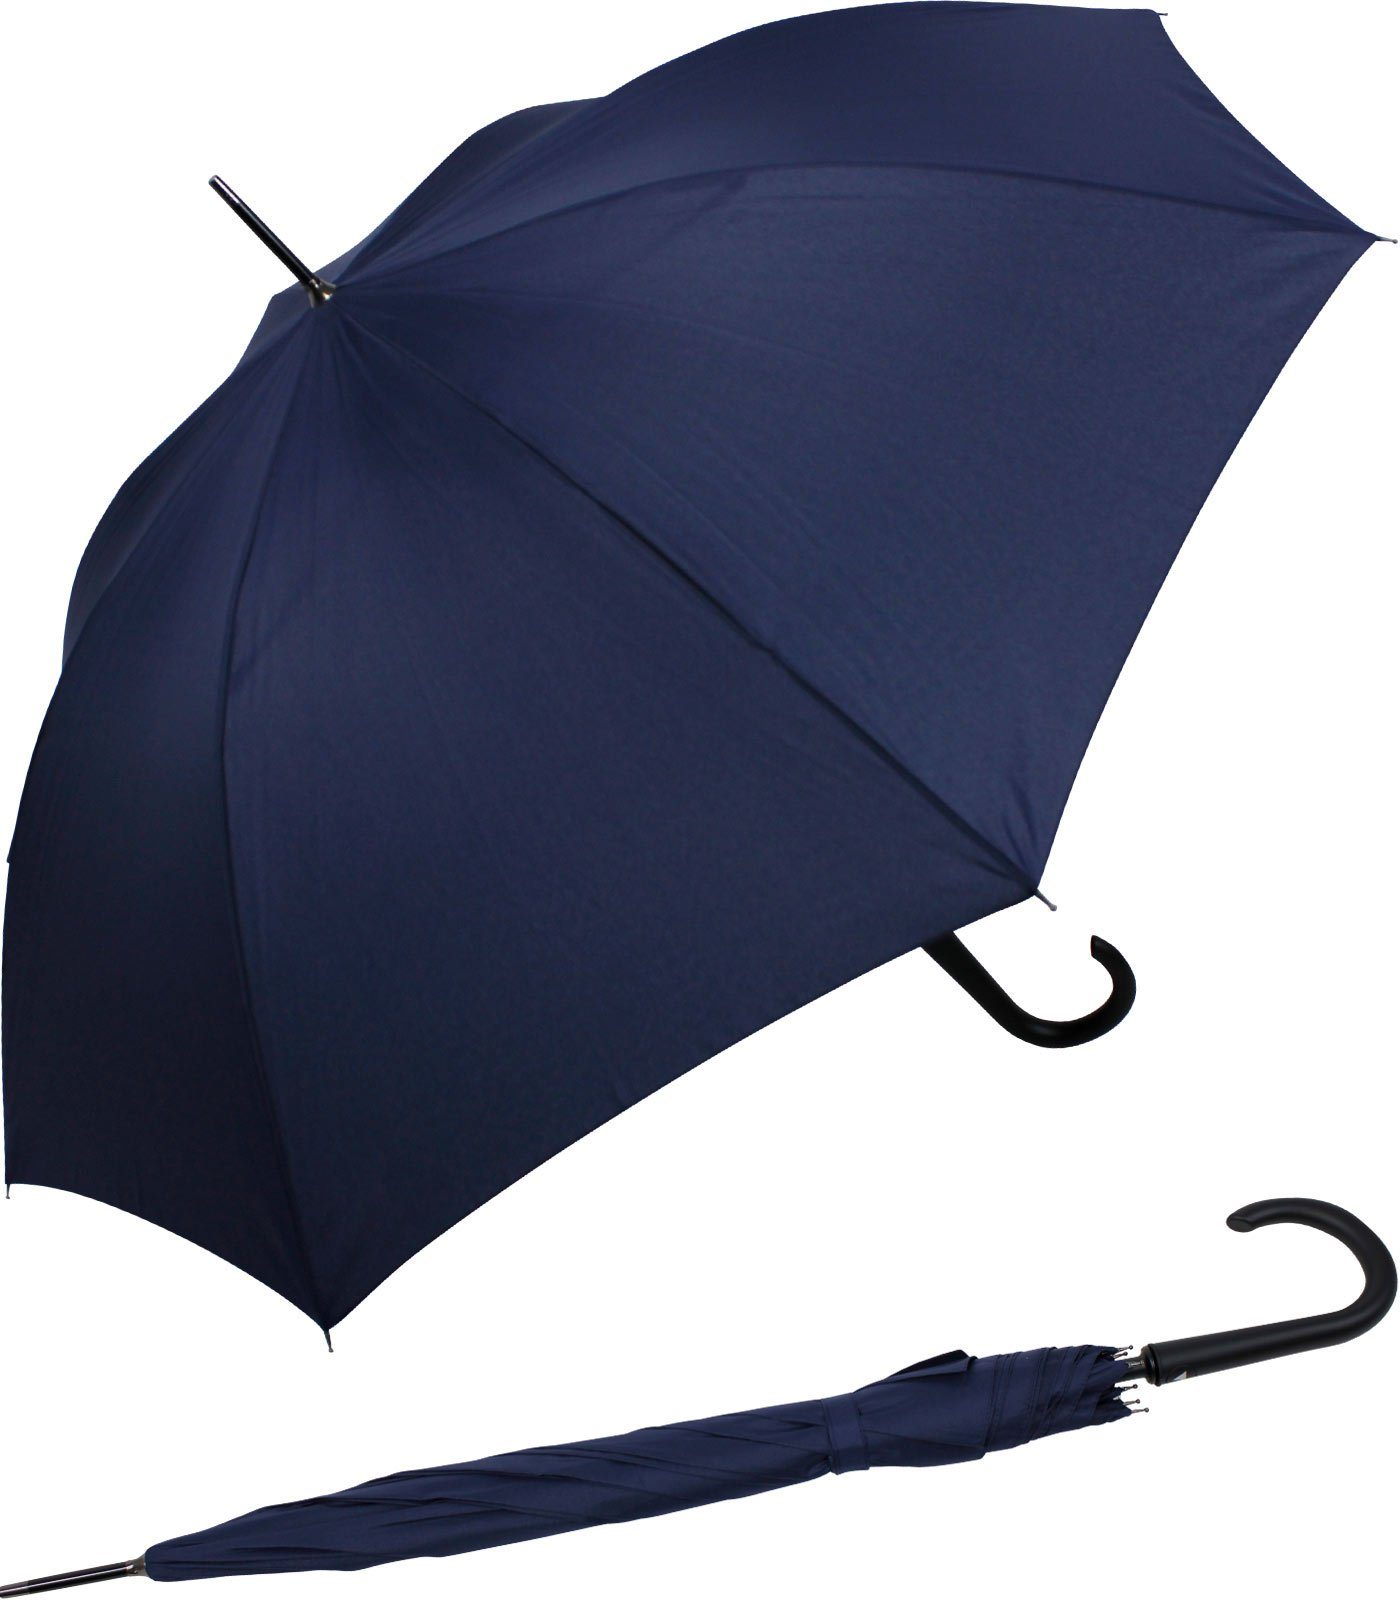 mit Regenschirm navy-blau RS-Versand stabiler großer Stahl-Fiberglas-Gestell, Auf-Automatik, Langregenschirm integrierter Auslöseknopf